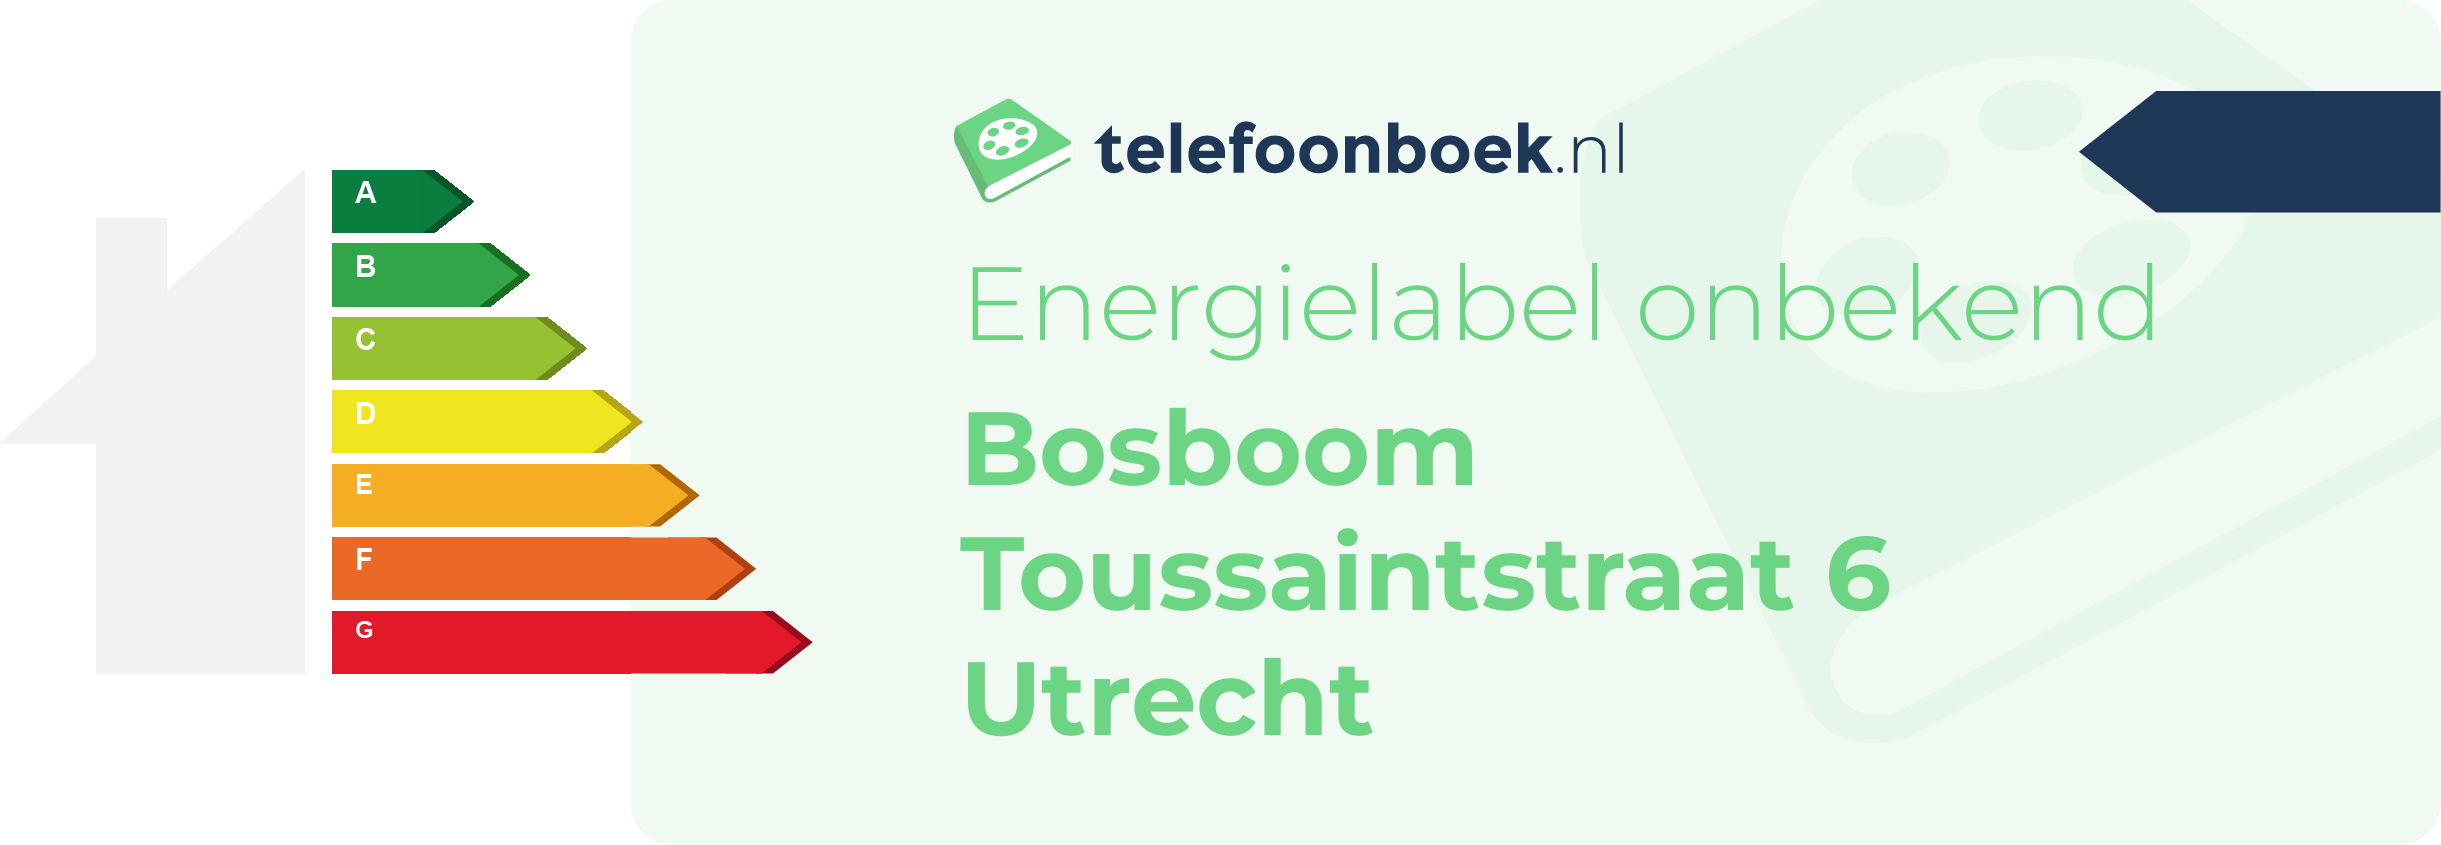 Energielabel Bosboom Toussaintstraat 6 Utrecht